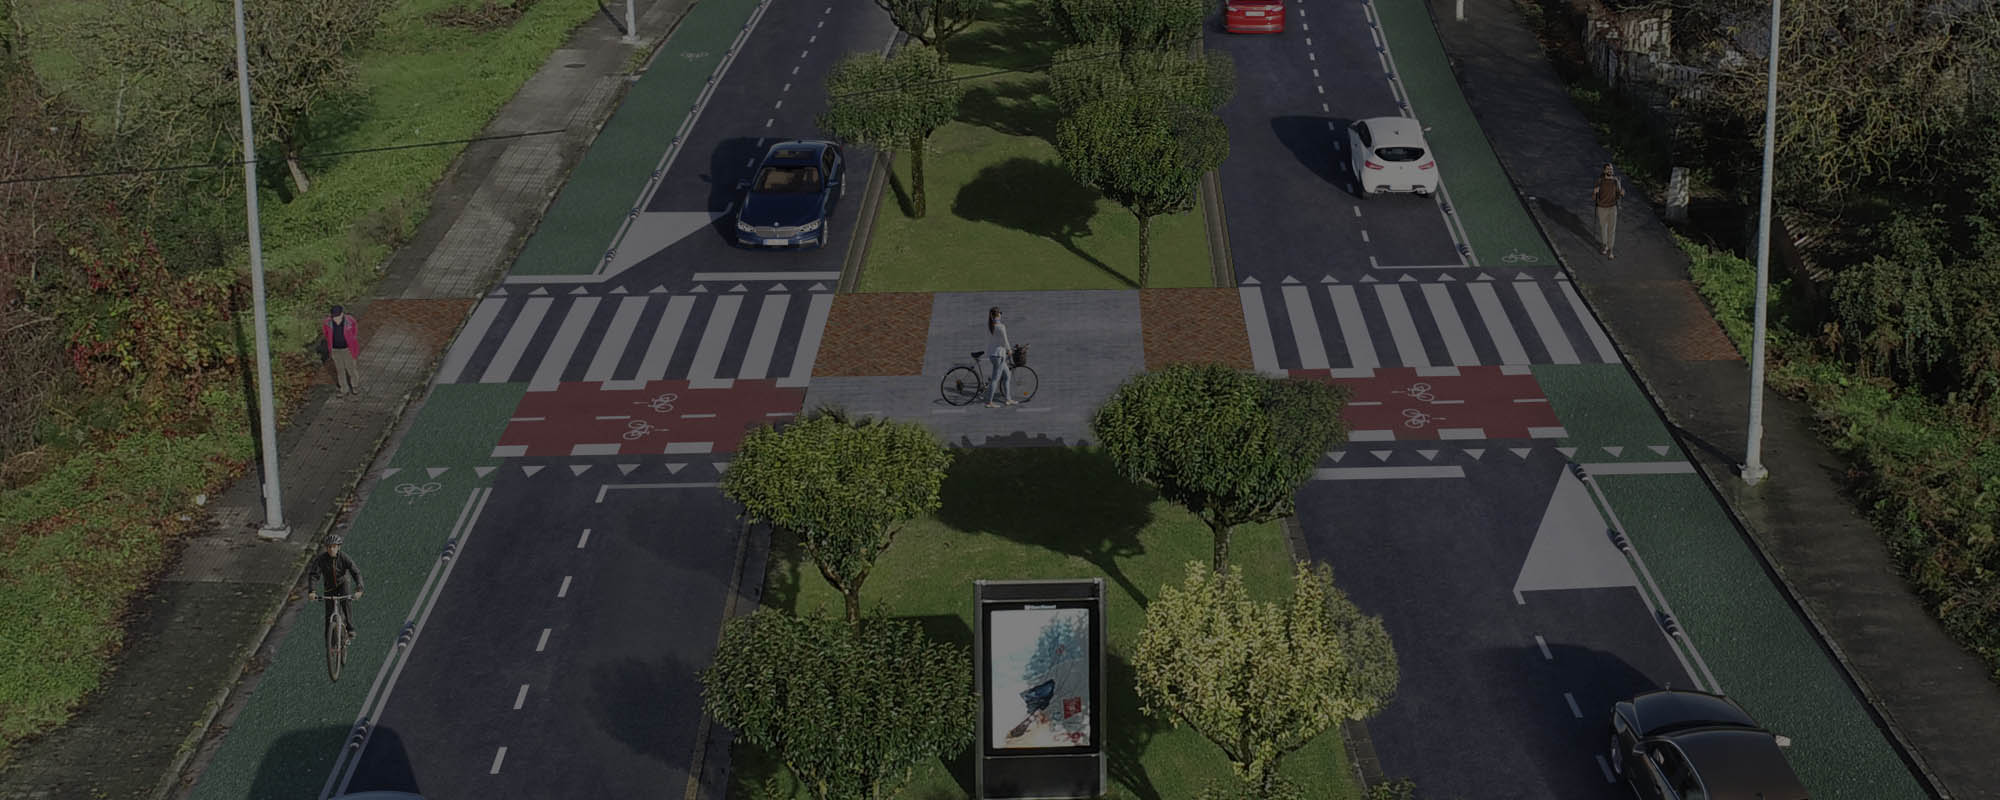 Renders 3D de un plan de actuación urbanística en Lugo